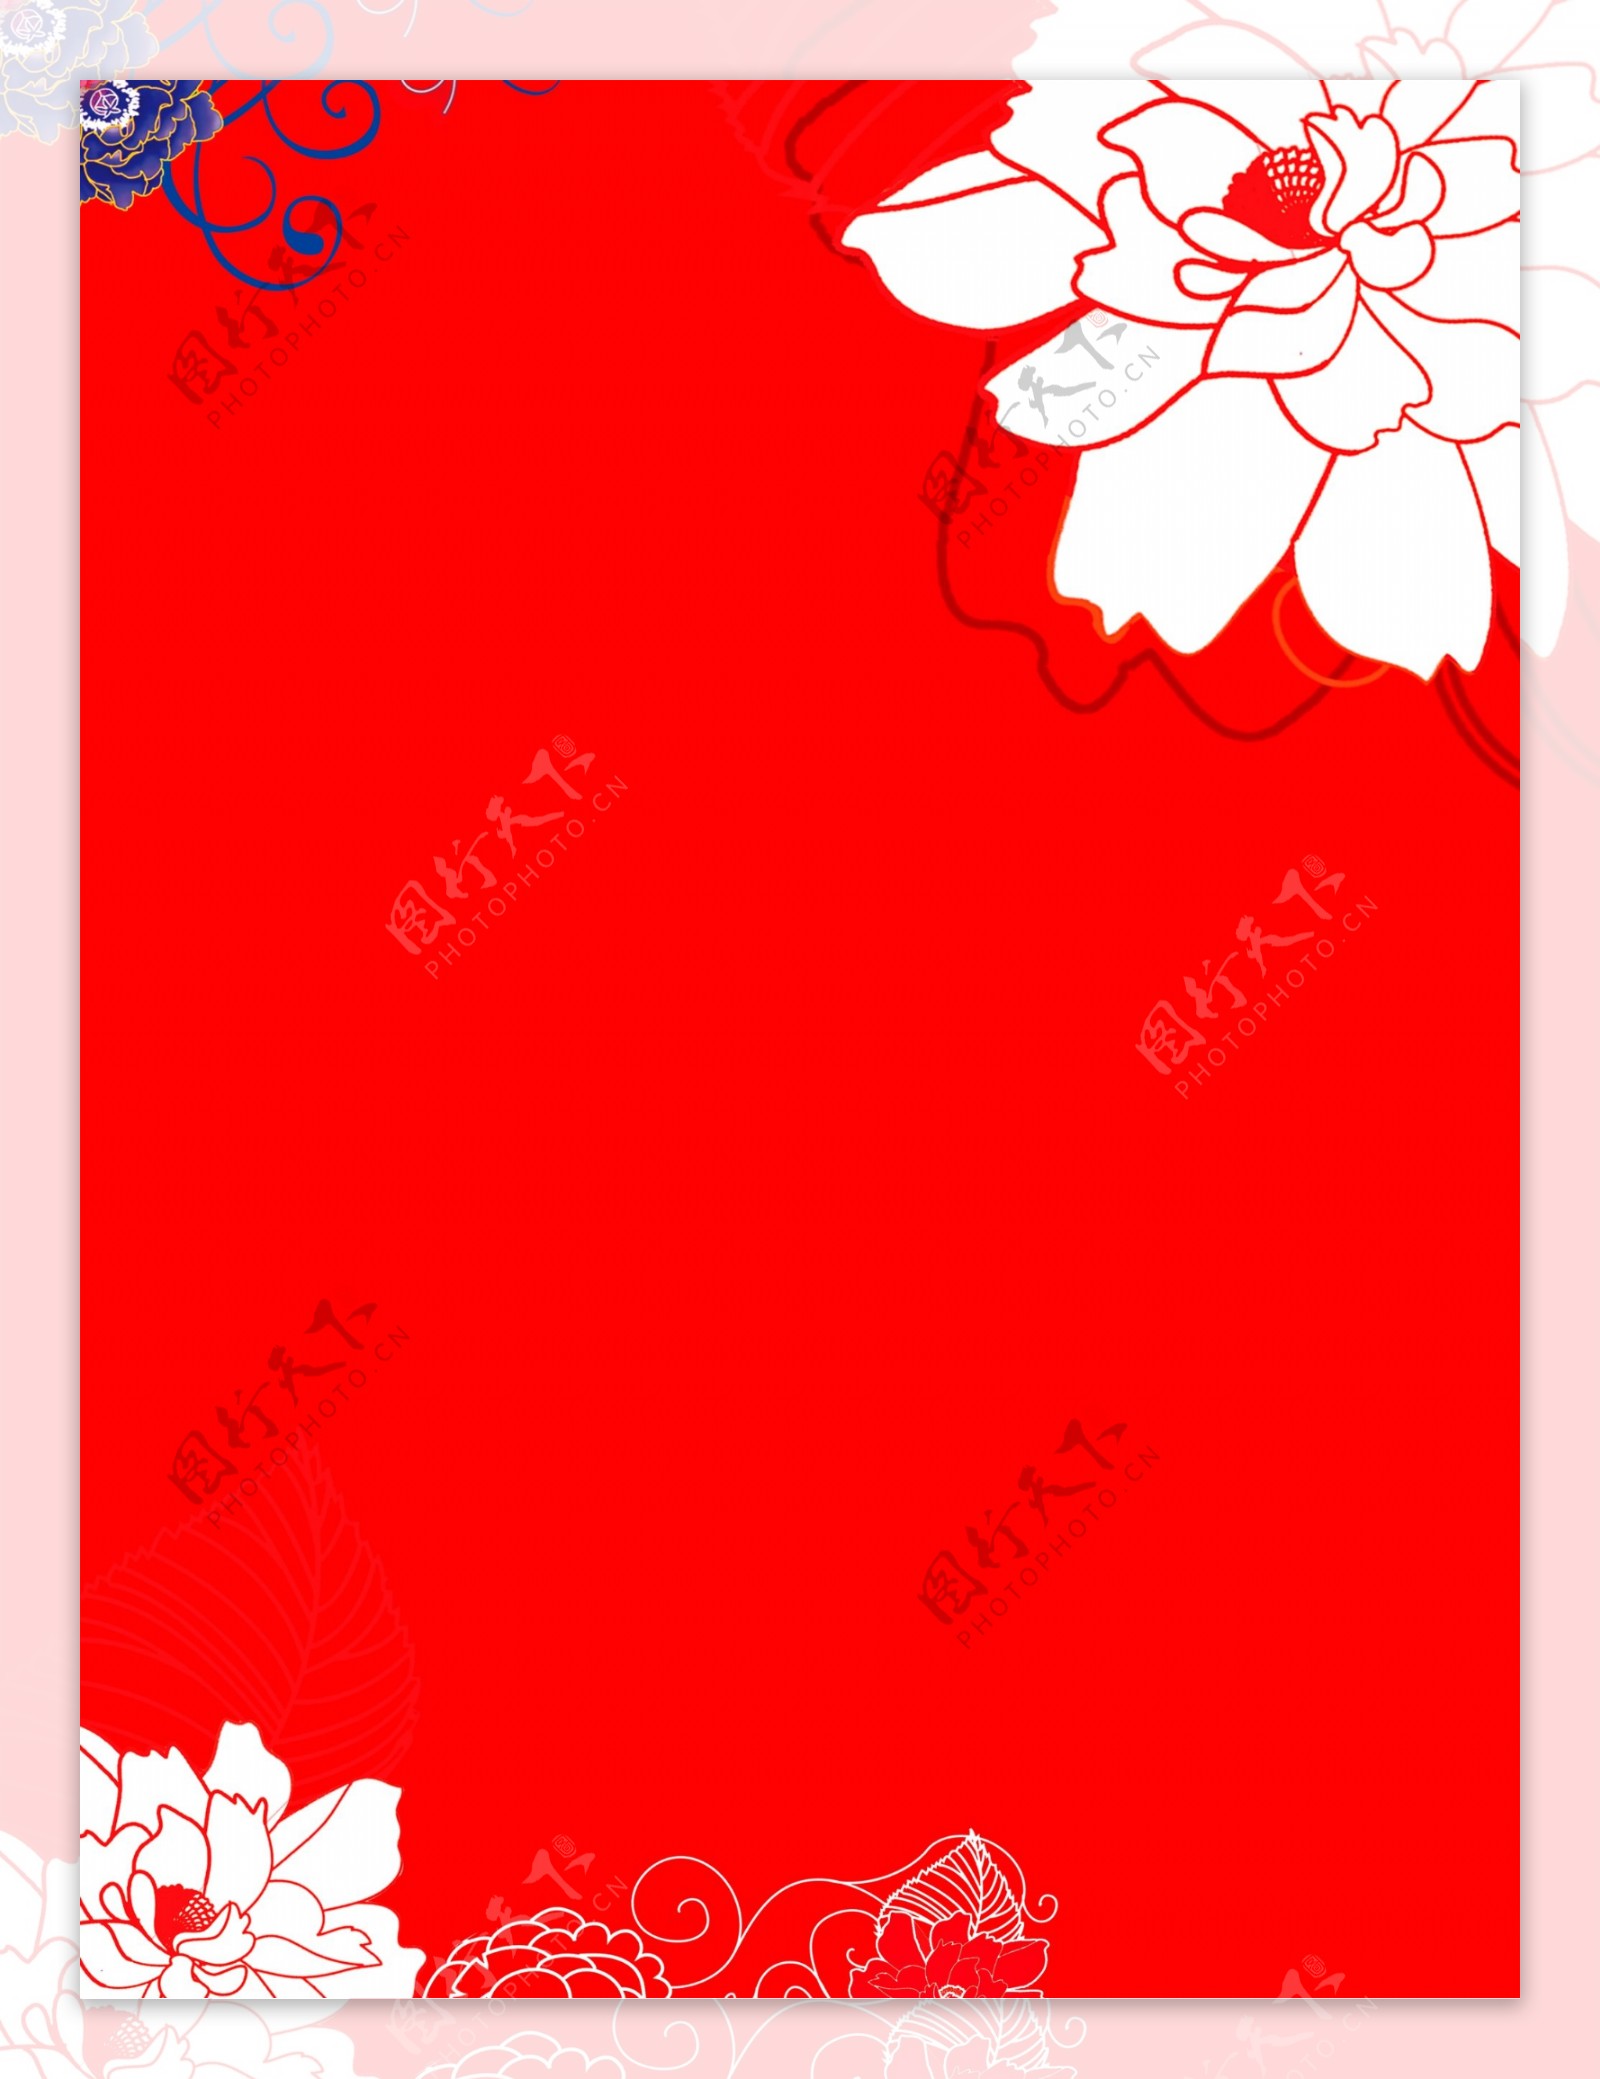 手绘花朵红色底纹广告背景素材